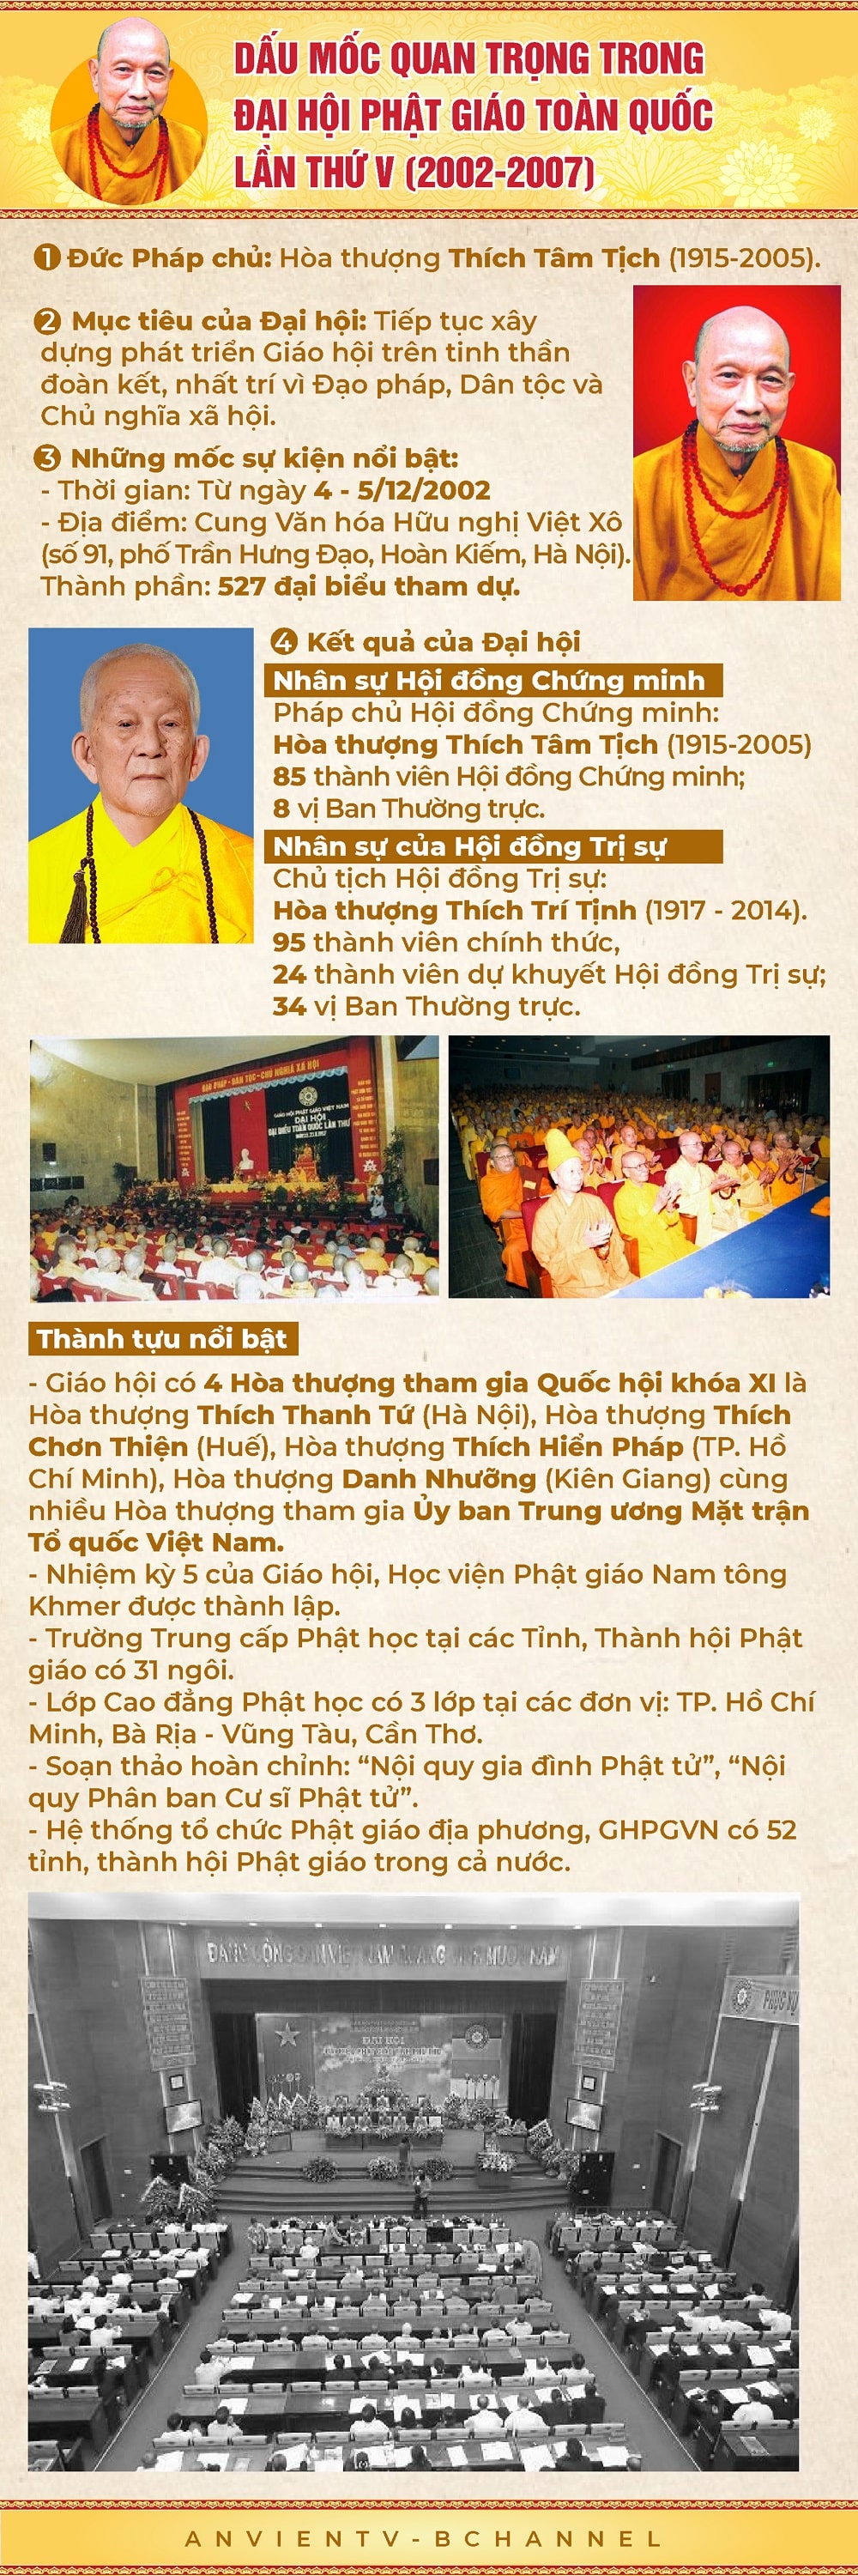 Đại hội Phật giáo Toàn quốc lần thứ V